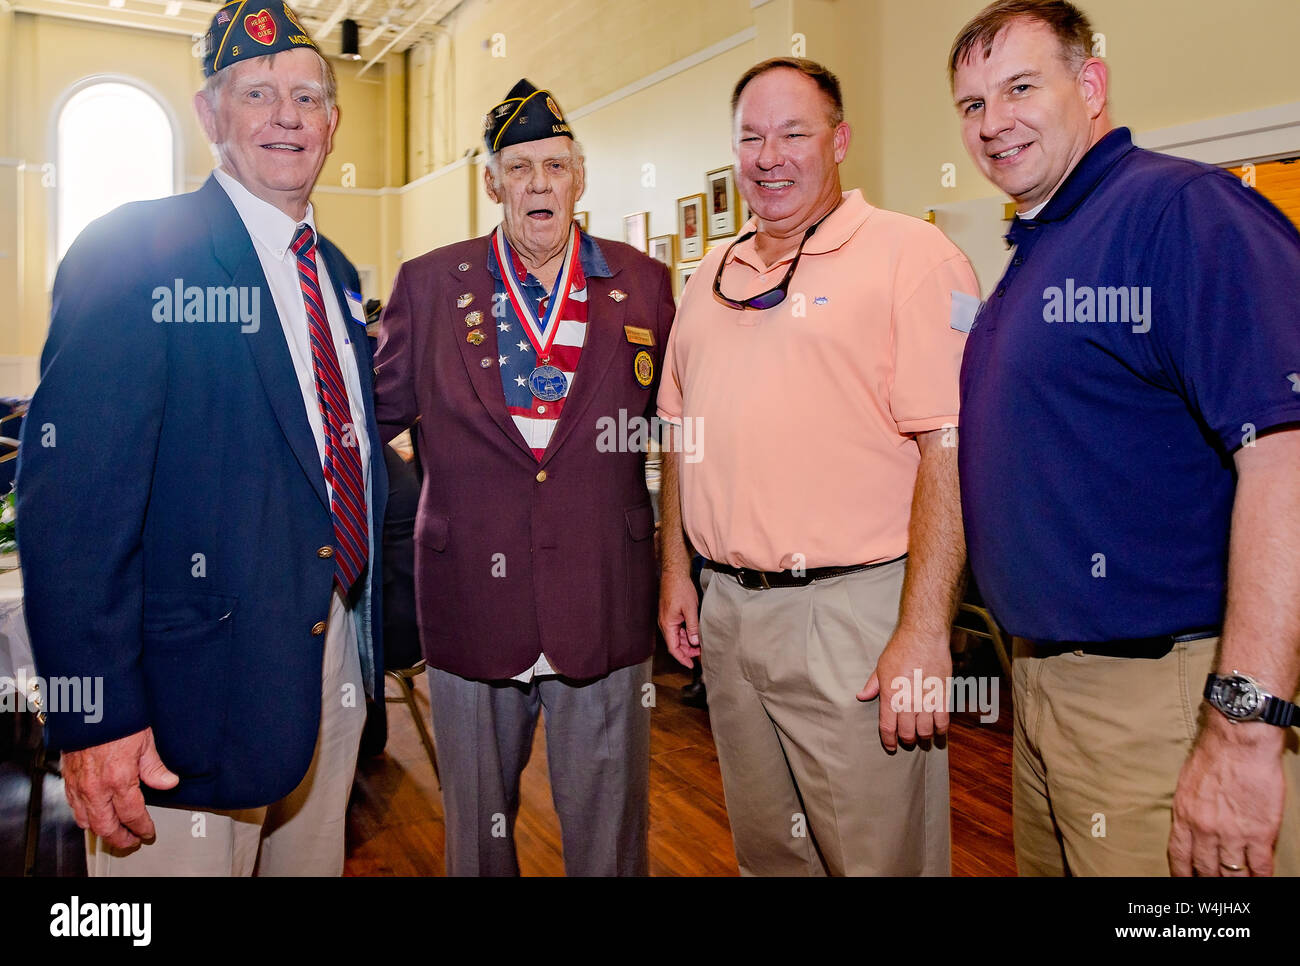 Les membres de l'American Legion célébrer avec leur communauté au cours de l'après 3 journée d'accueil de Mobile, Alabama. Banque D'Images